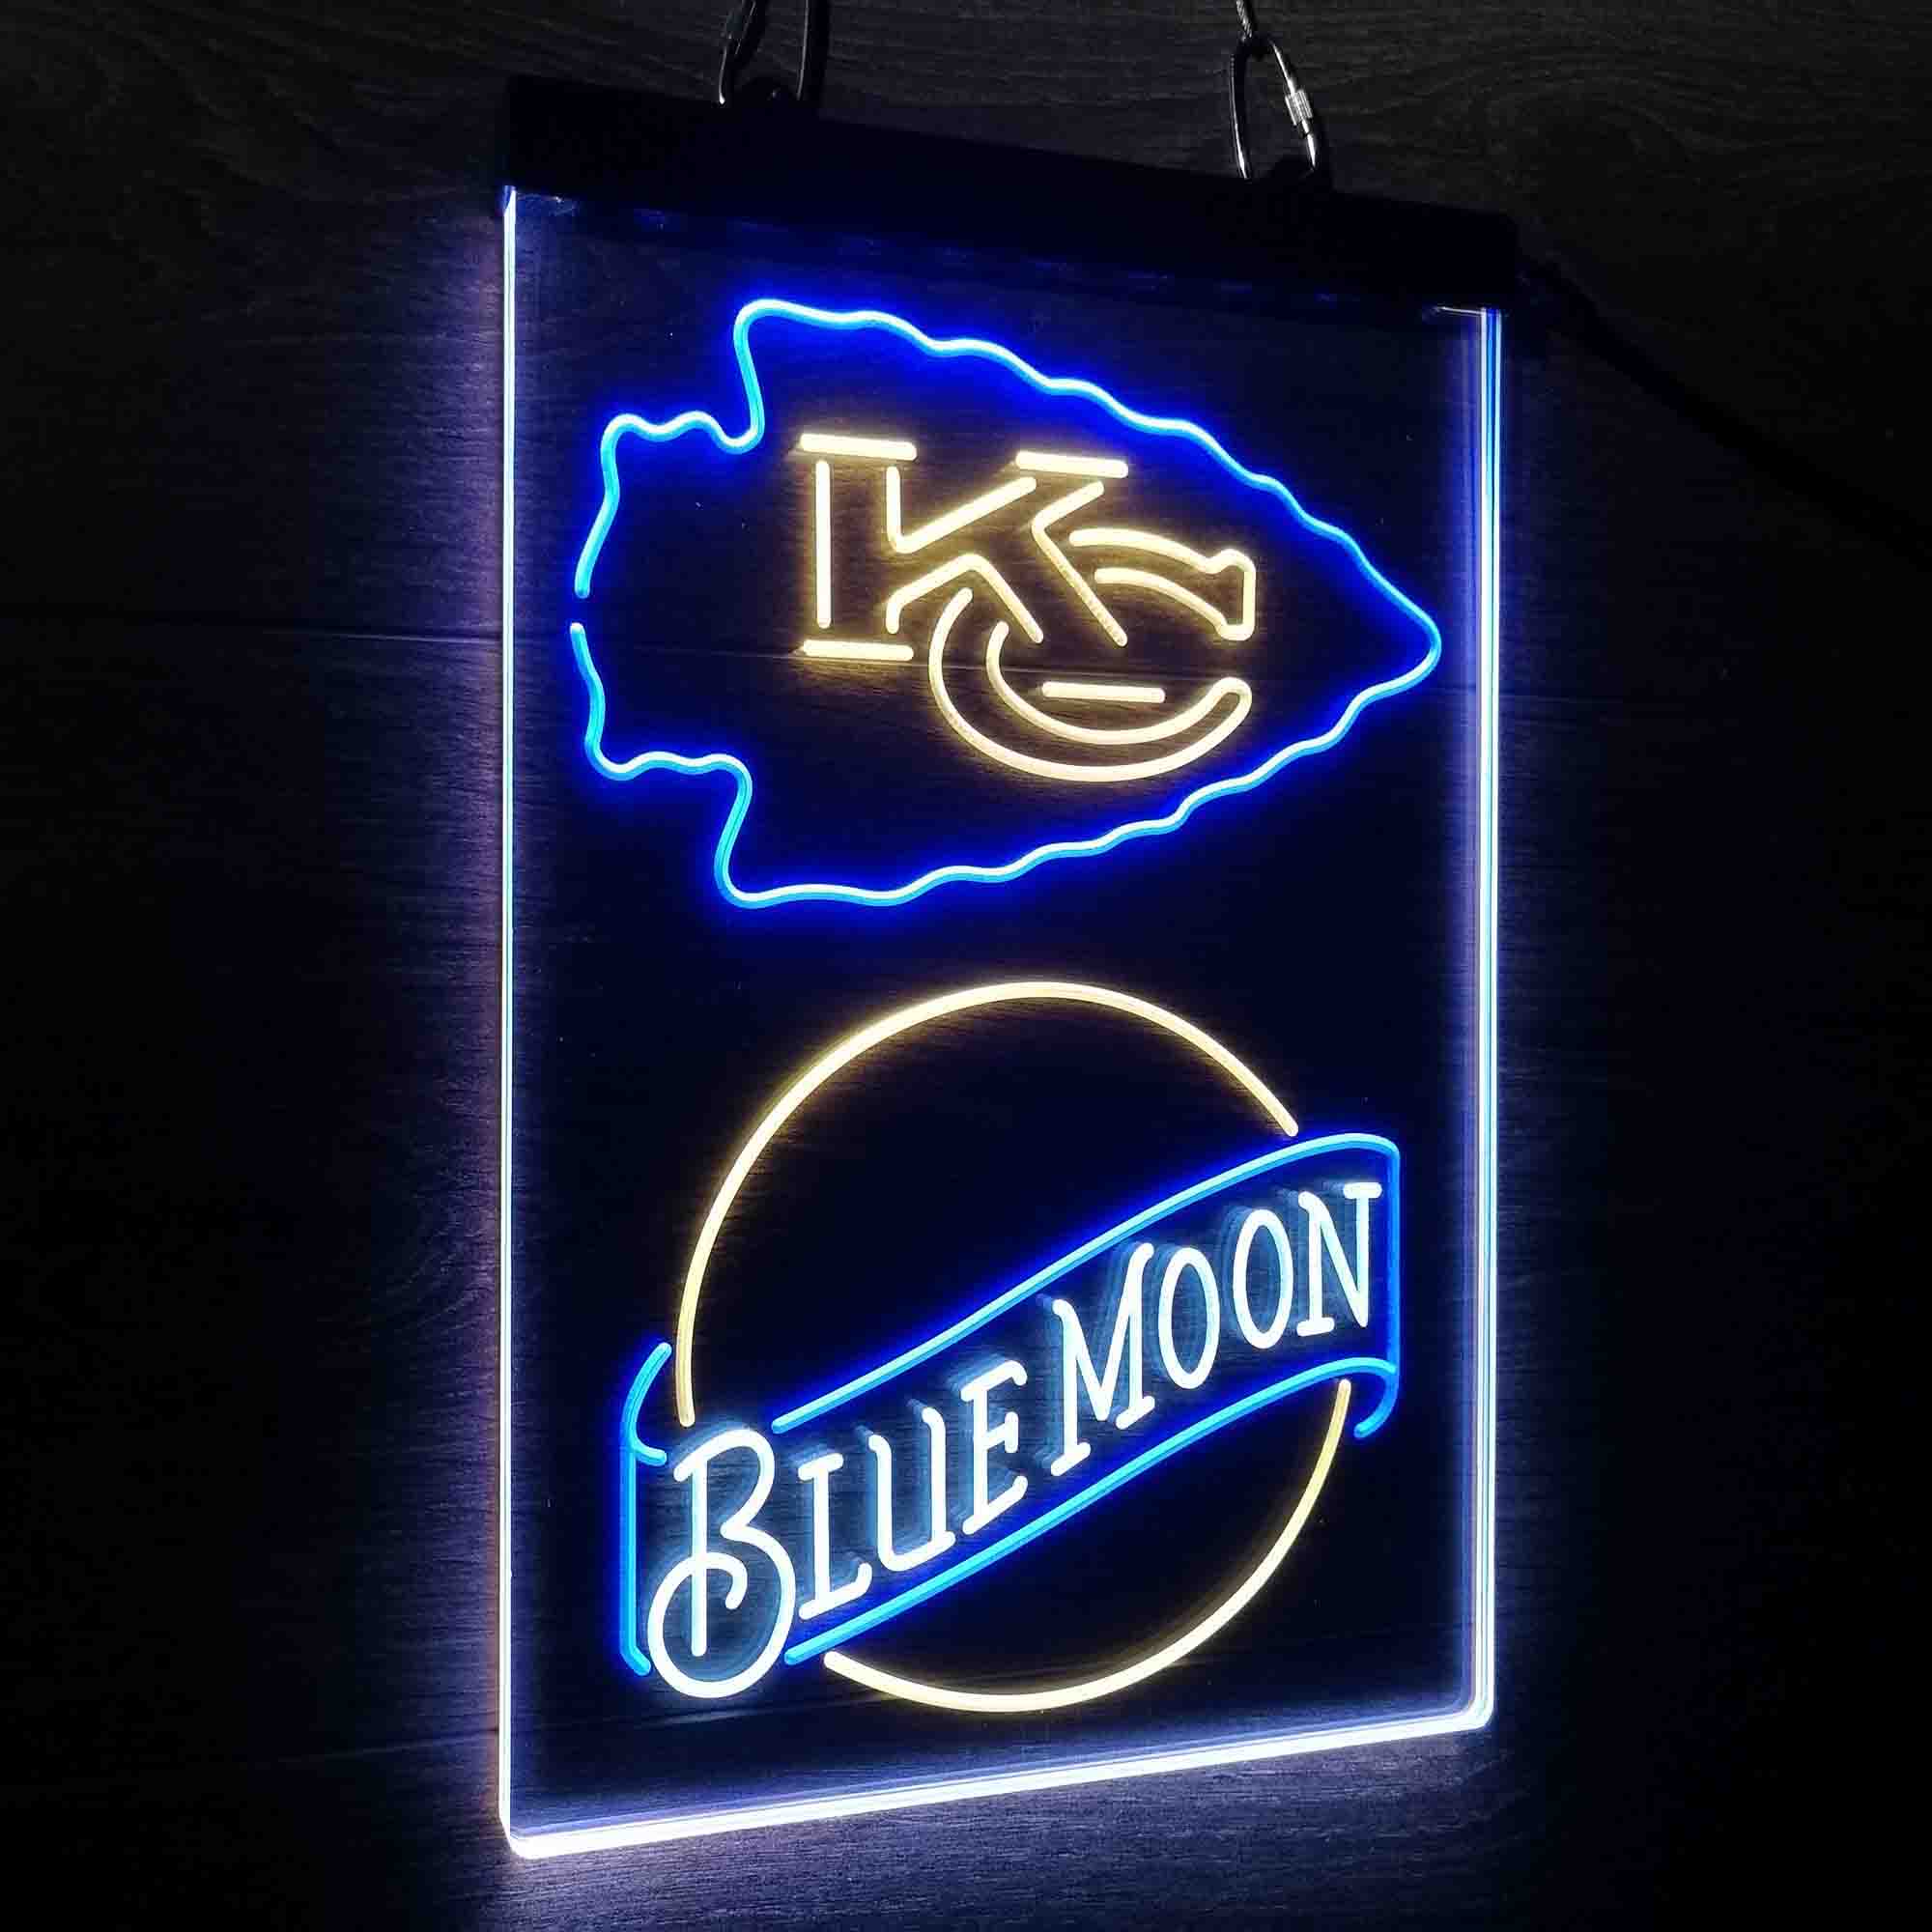 Blue Moon Bar Kansas City Chiefs Est. 1960 Neon LED Sign 3 Colors